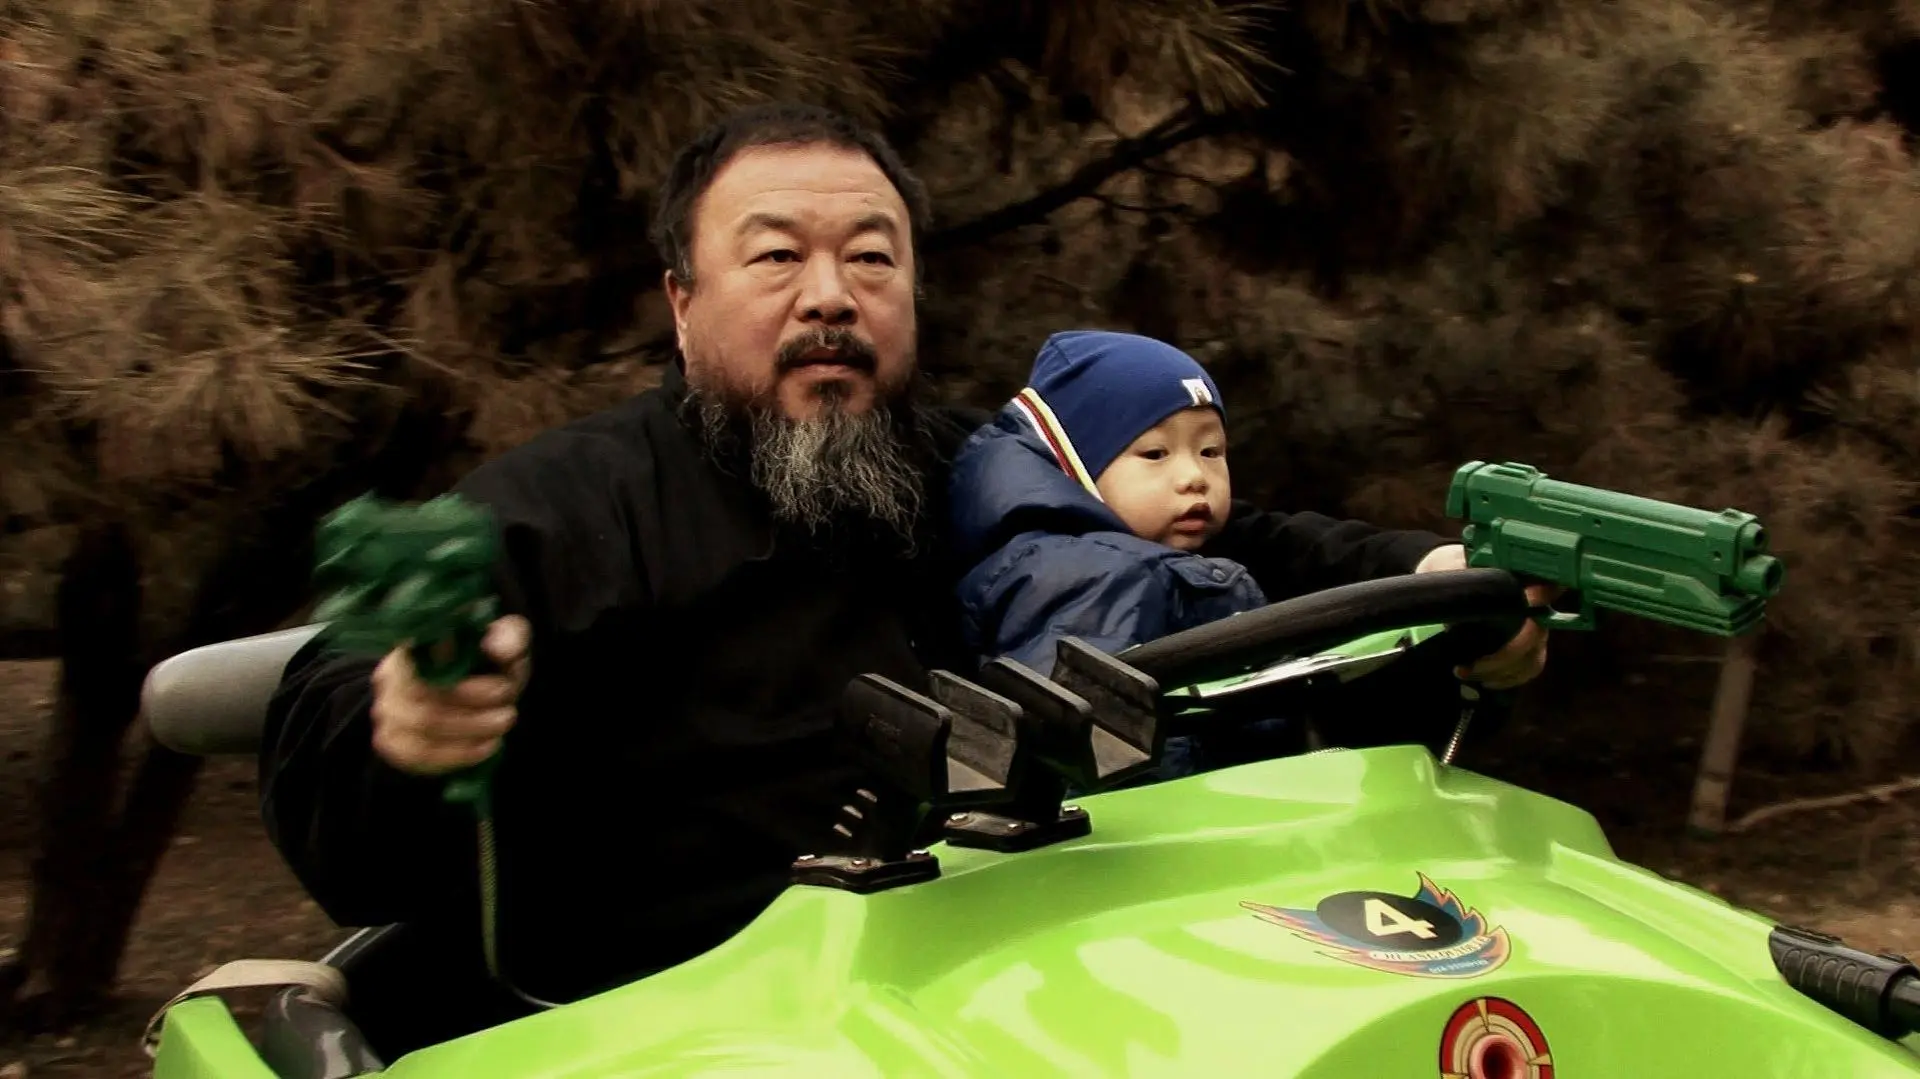 Ai Weiwei: The Fake Case_peliplat